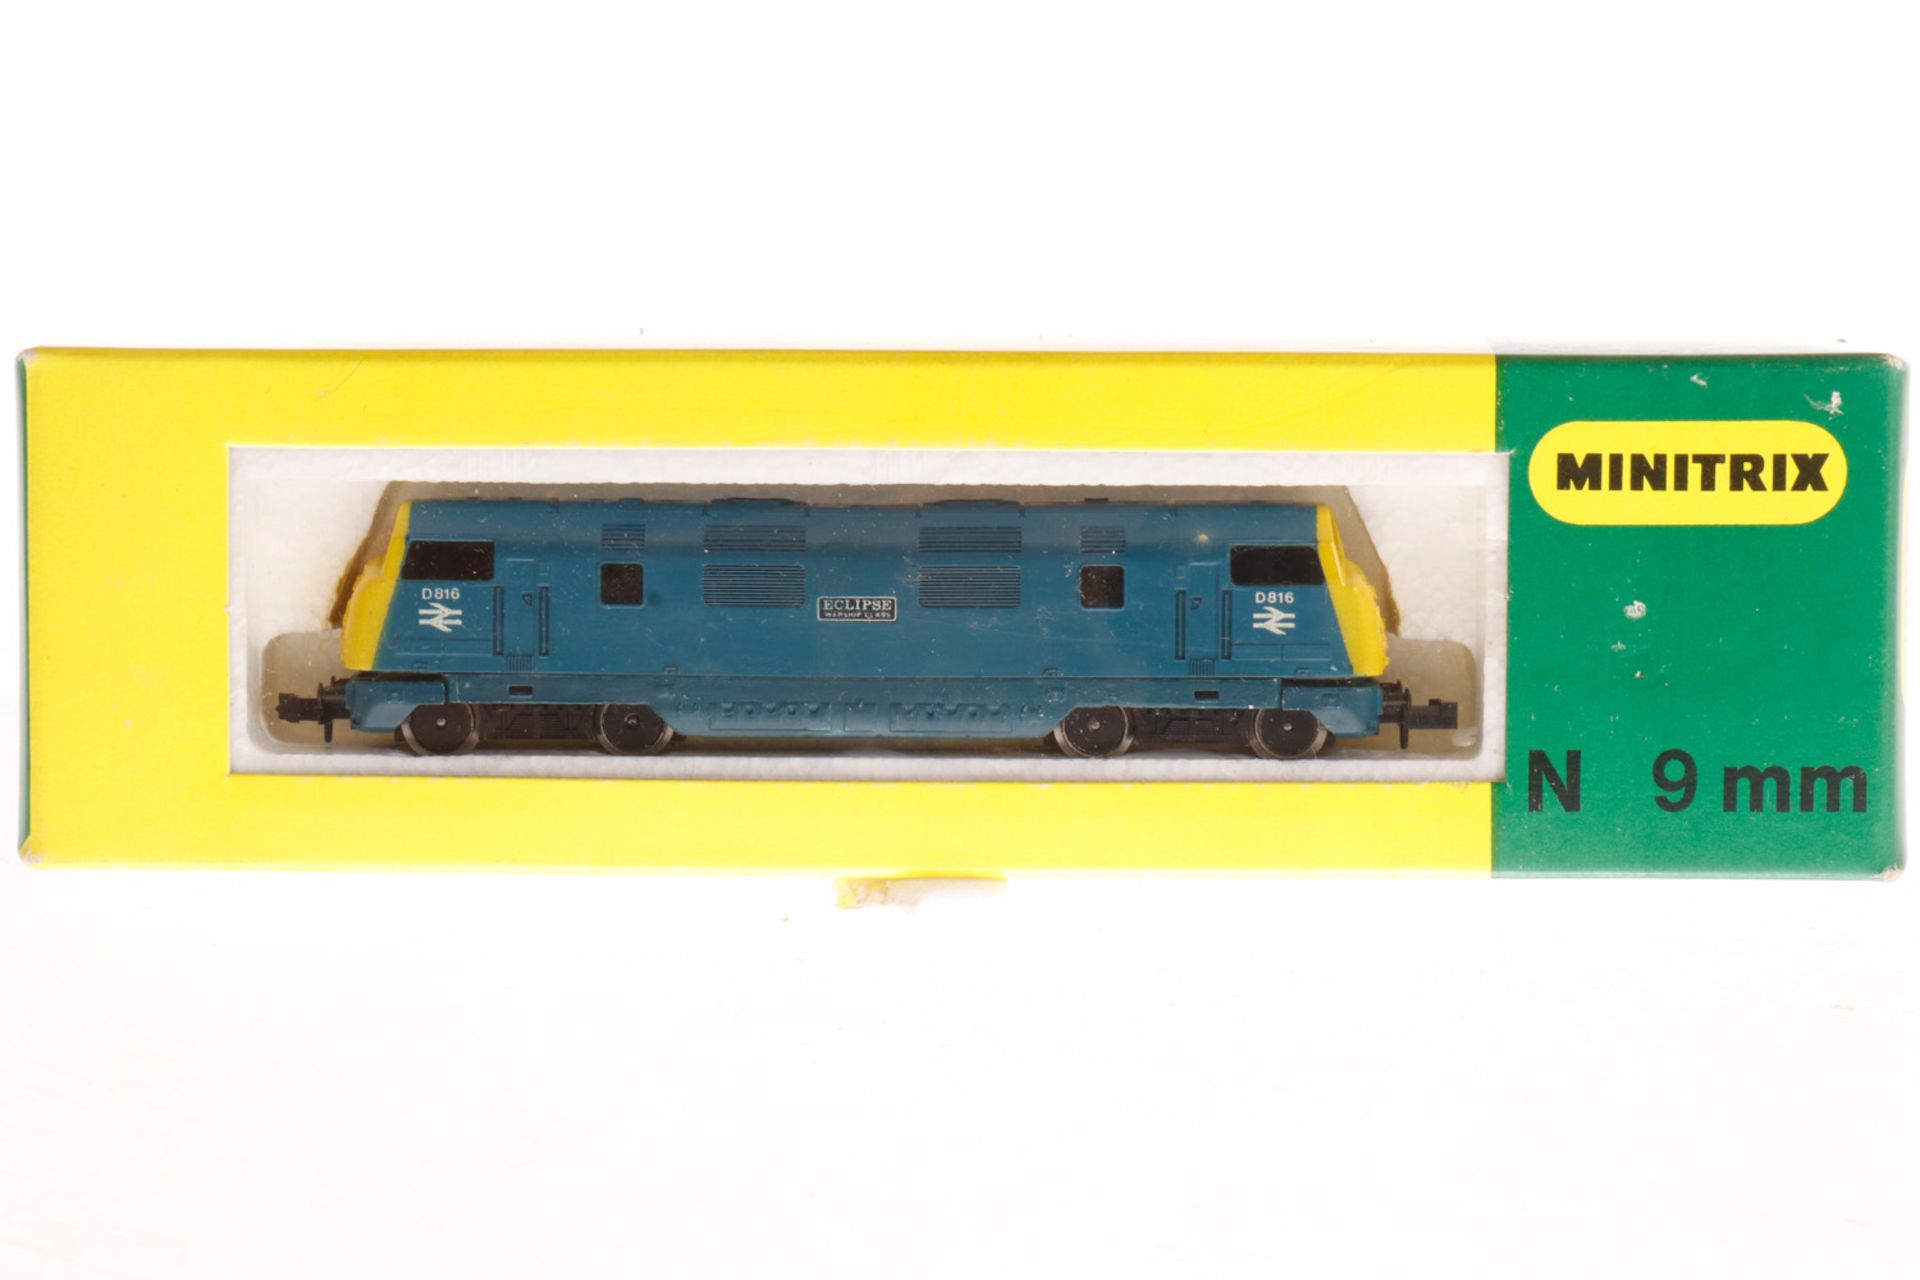 Minitrix Diesellok "D 816" 2034, S N, blau/gelb, Alterungsspuren, OK, Z 1-2